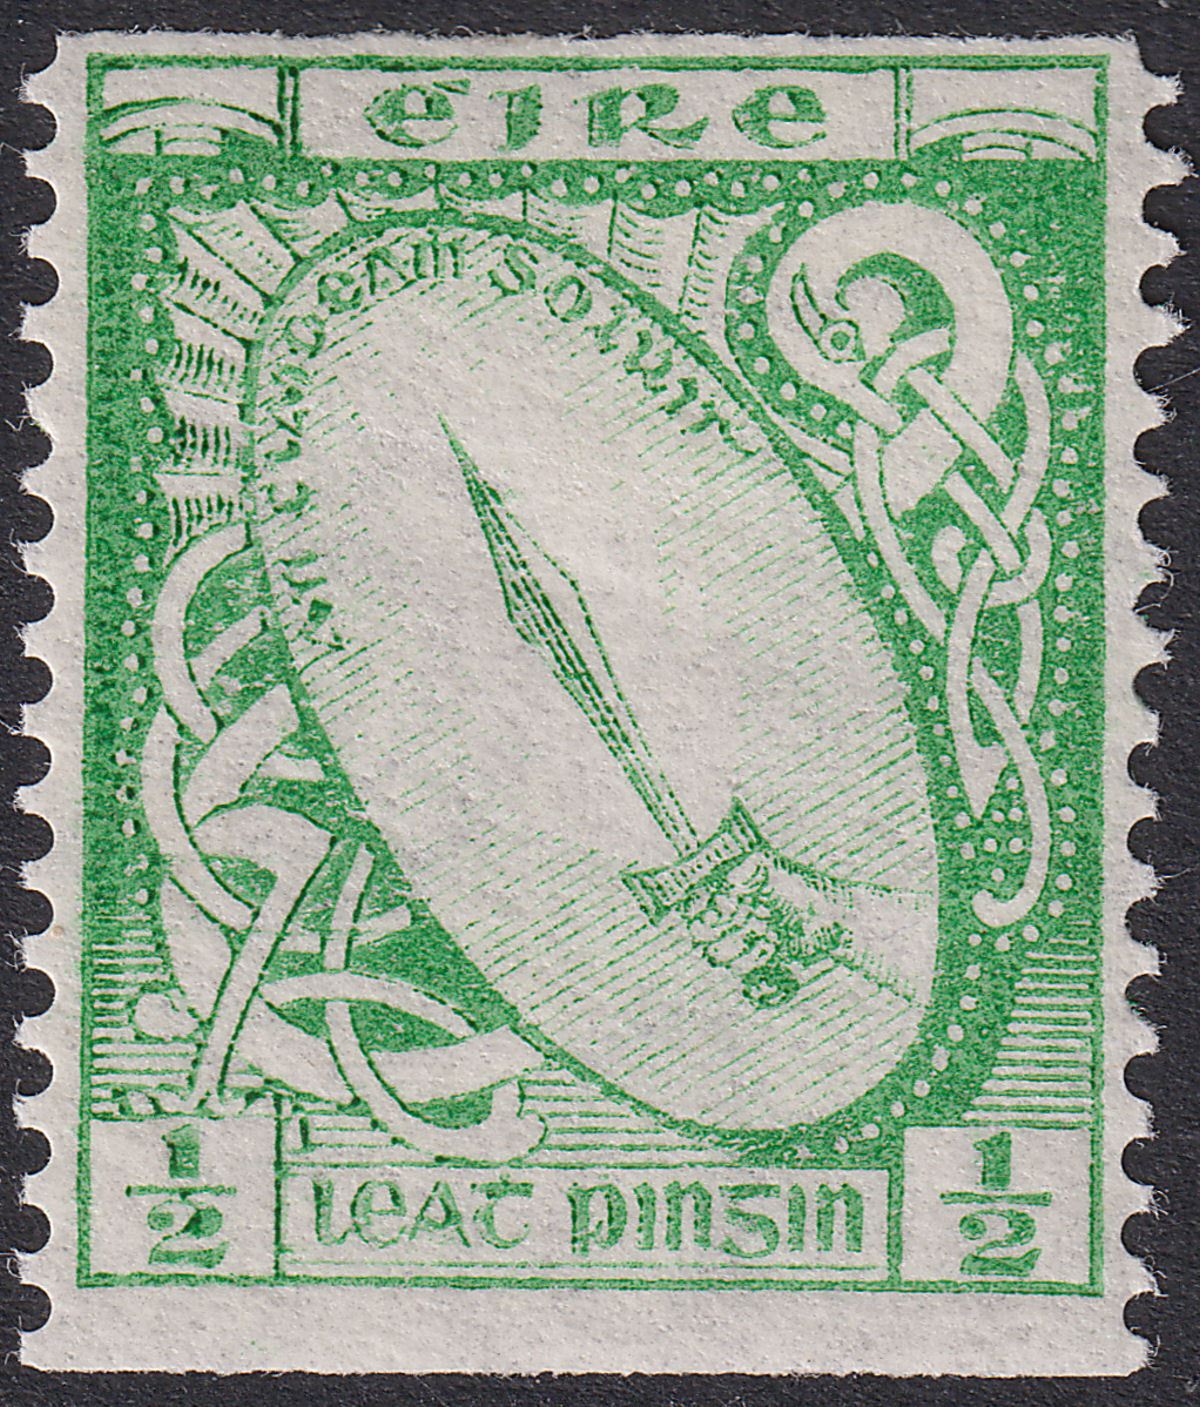 Ireland 1934 ½d Bright Green Imperf x p14 UM Mint SG71a cat £30 MNH